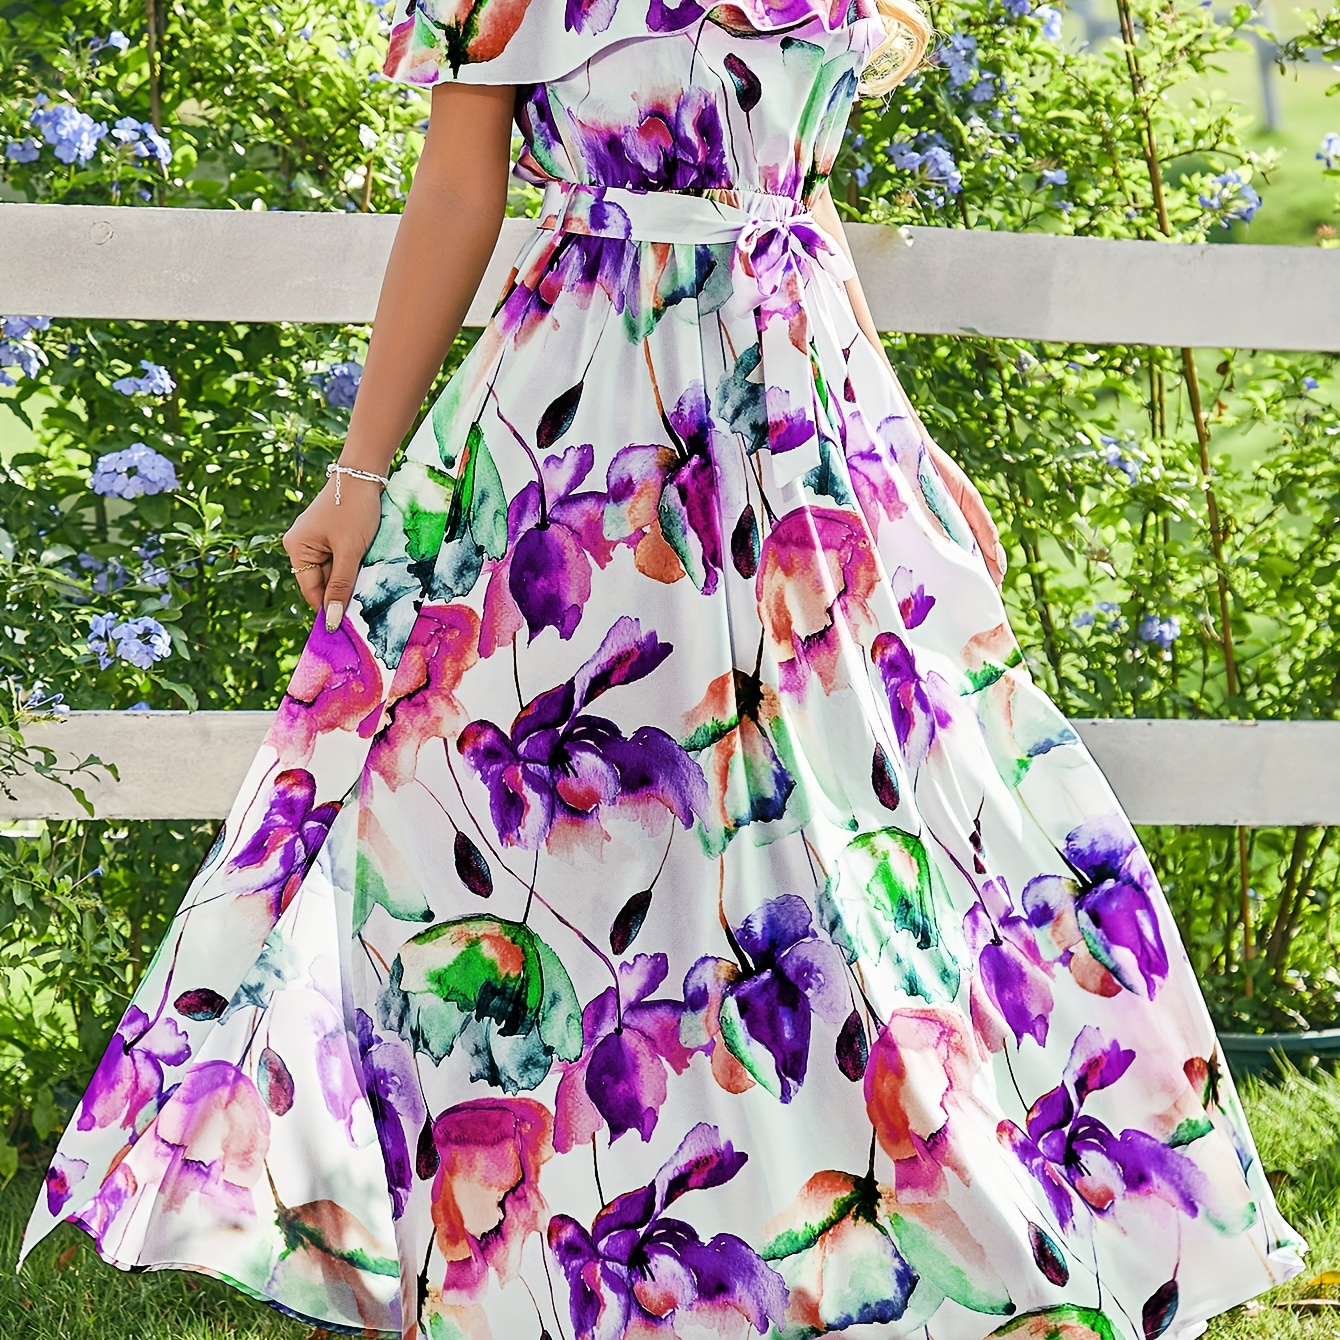 

Floral Print Belted Off Shoulder Dress, Elegant Short Sleeve Swing Dress For Spring & Summer, Women's Clothing